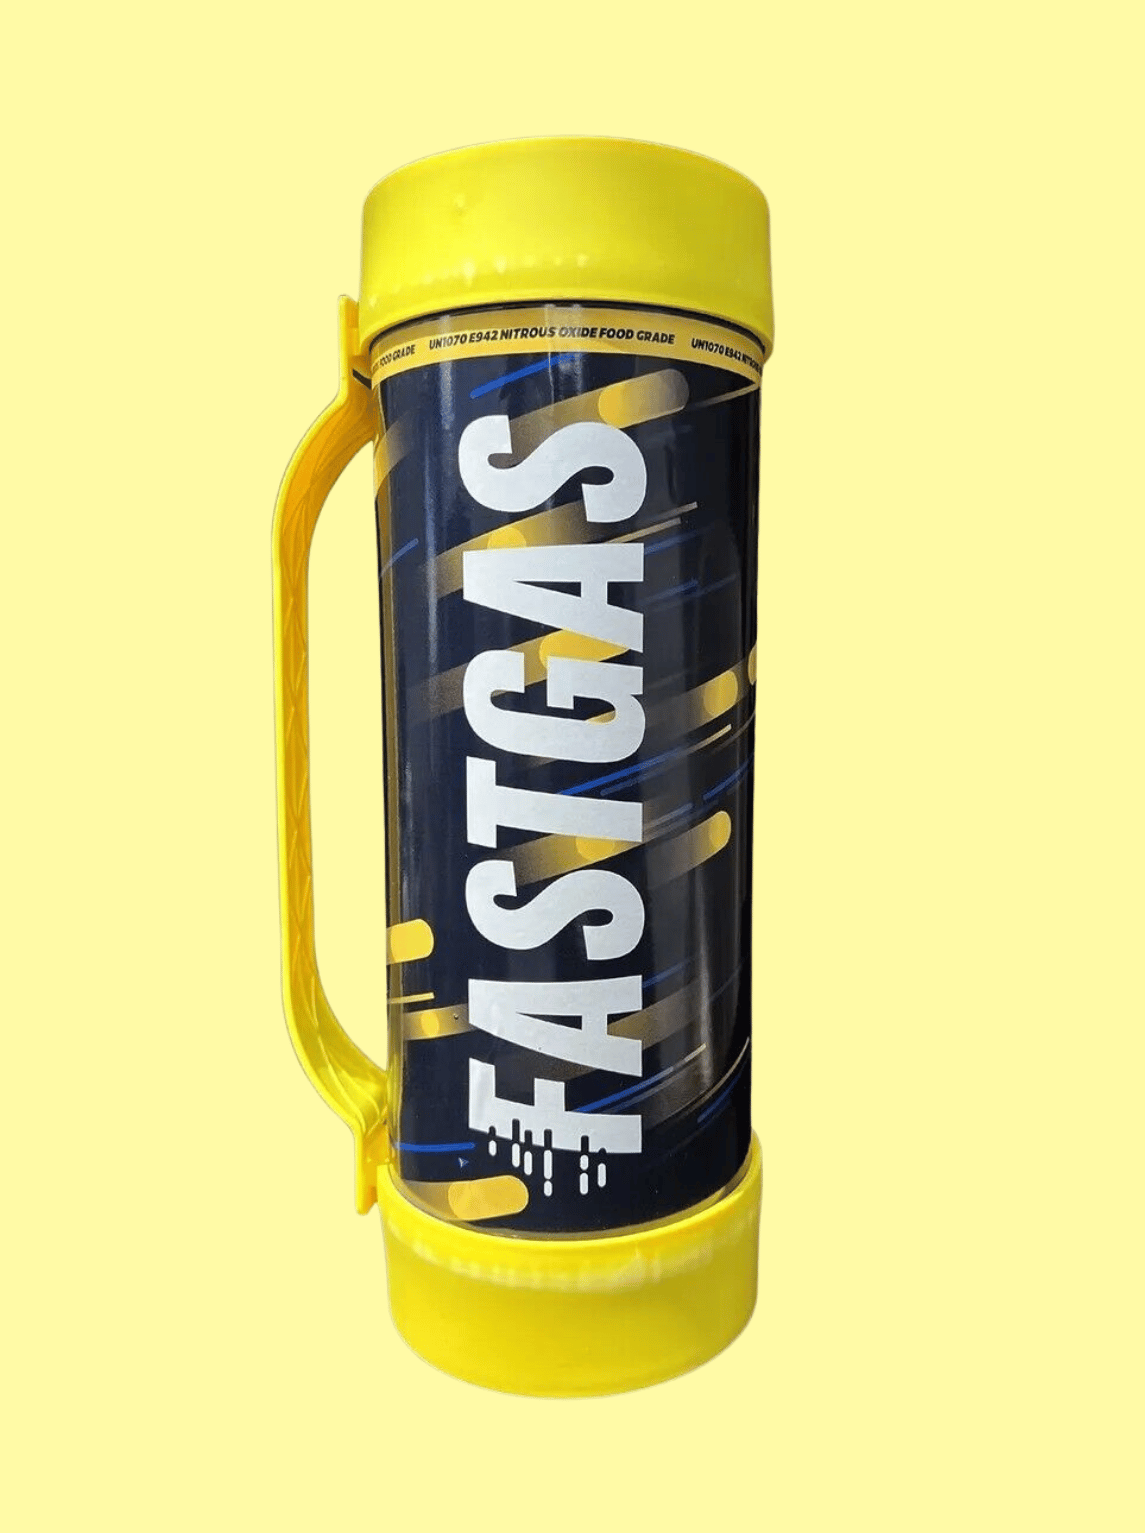  Die Gasflasche ist schwarz mit dem weißen Logo "Fastgas" 2kg. Die flasche ist blau, gelb gestreift und hat ein gelbes Gummiband, dass oben und unten an der Flasche befestigt ist, welches zum Halten der Flasche dient. Der Hintergrund ist hellgelb.